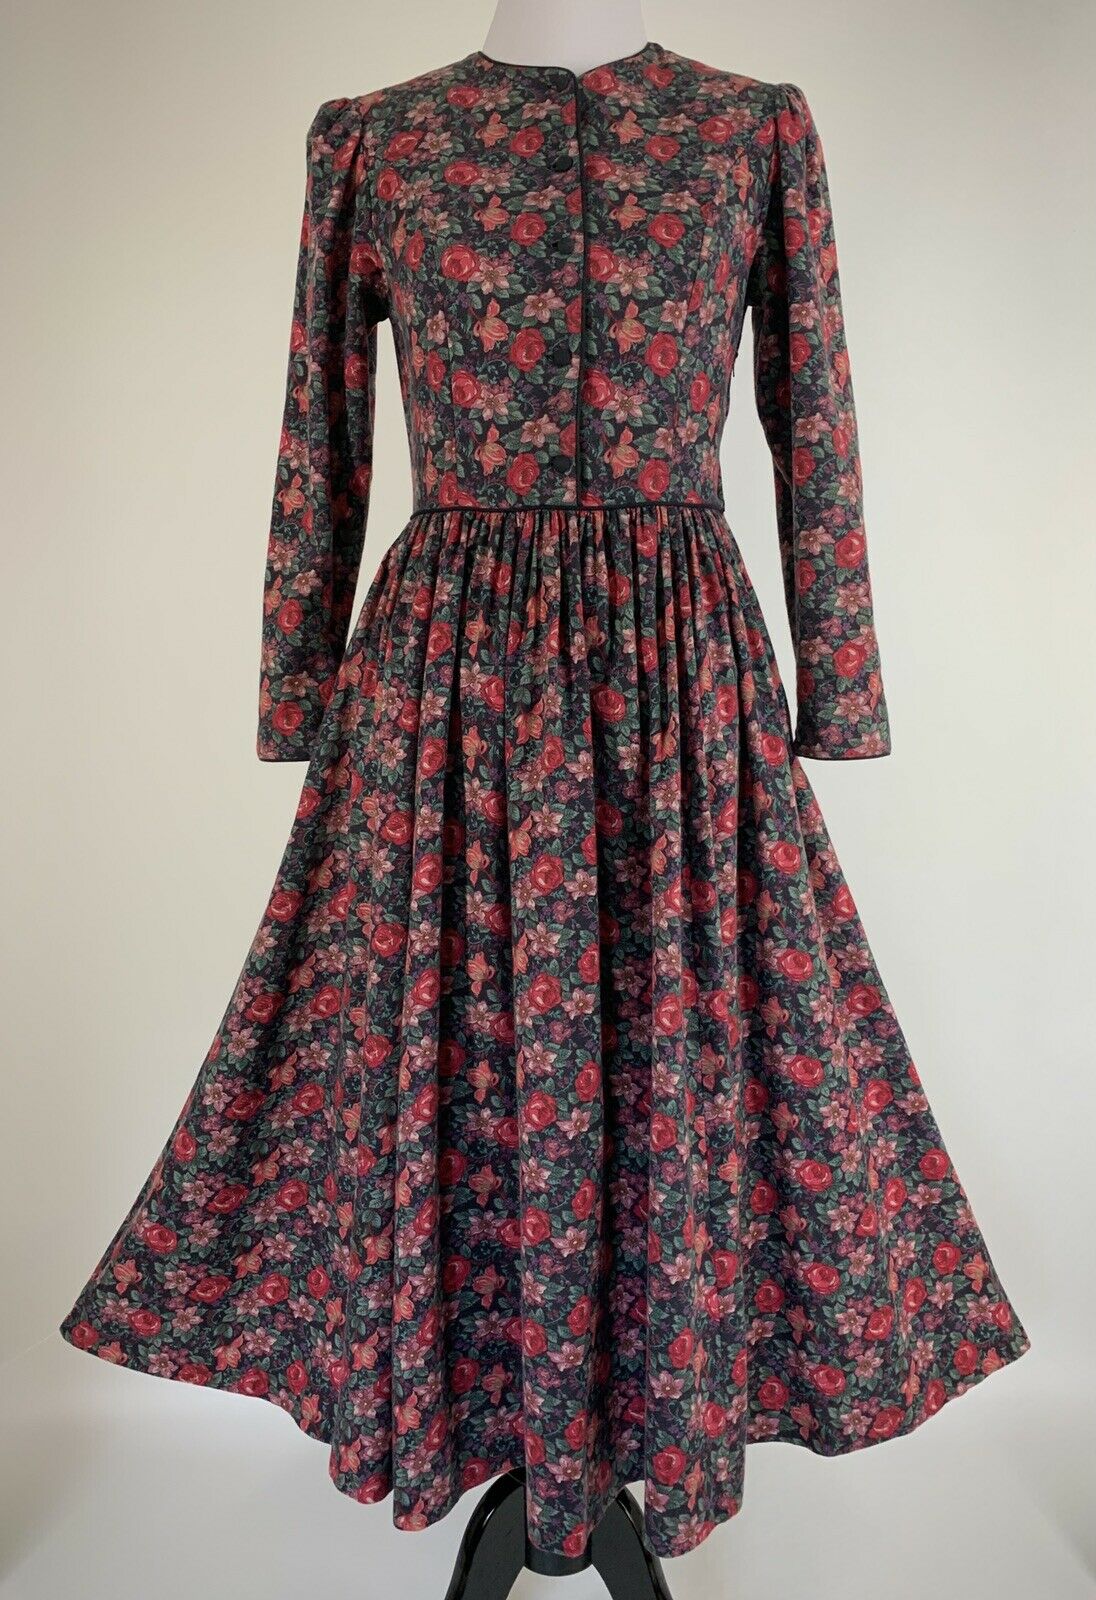 Vintage Laura Ashley Dress Floral Roses Prairie Cottagecore Size 10